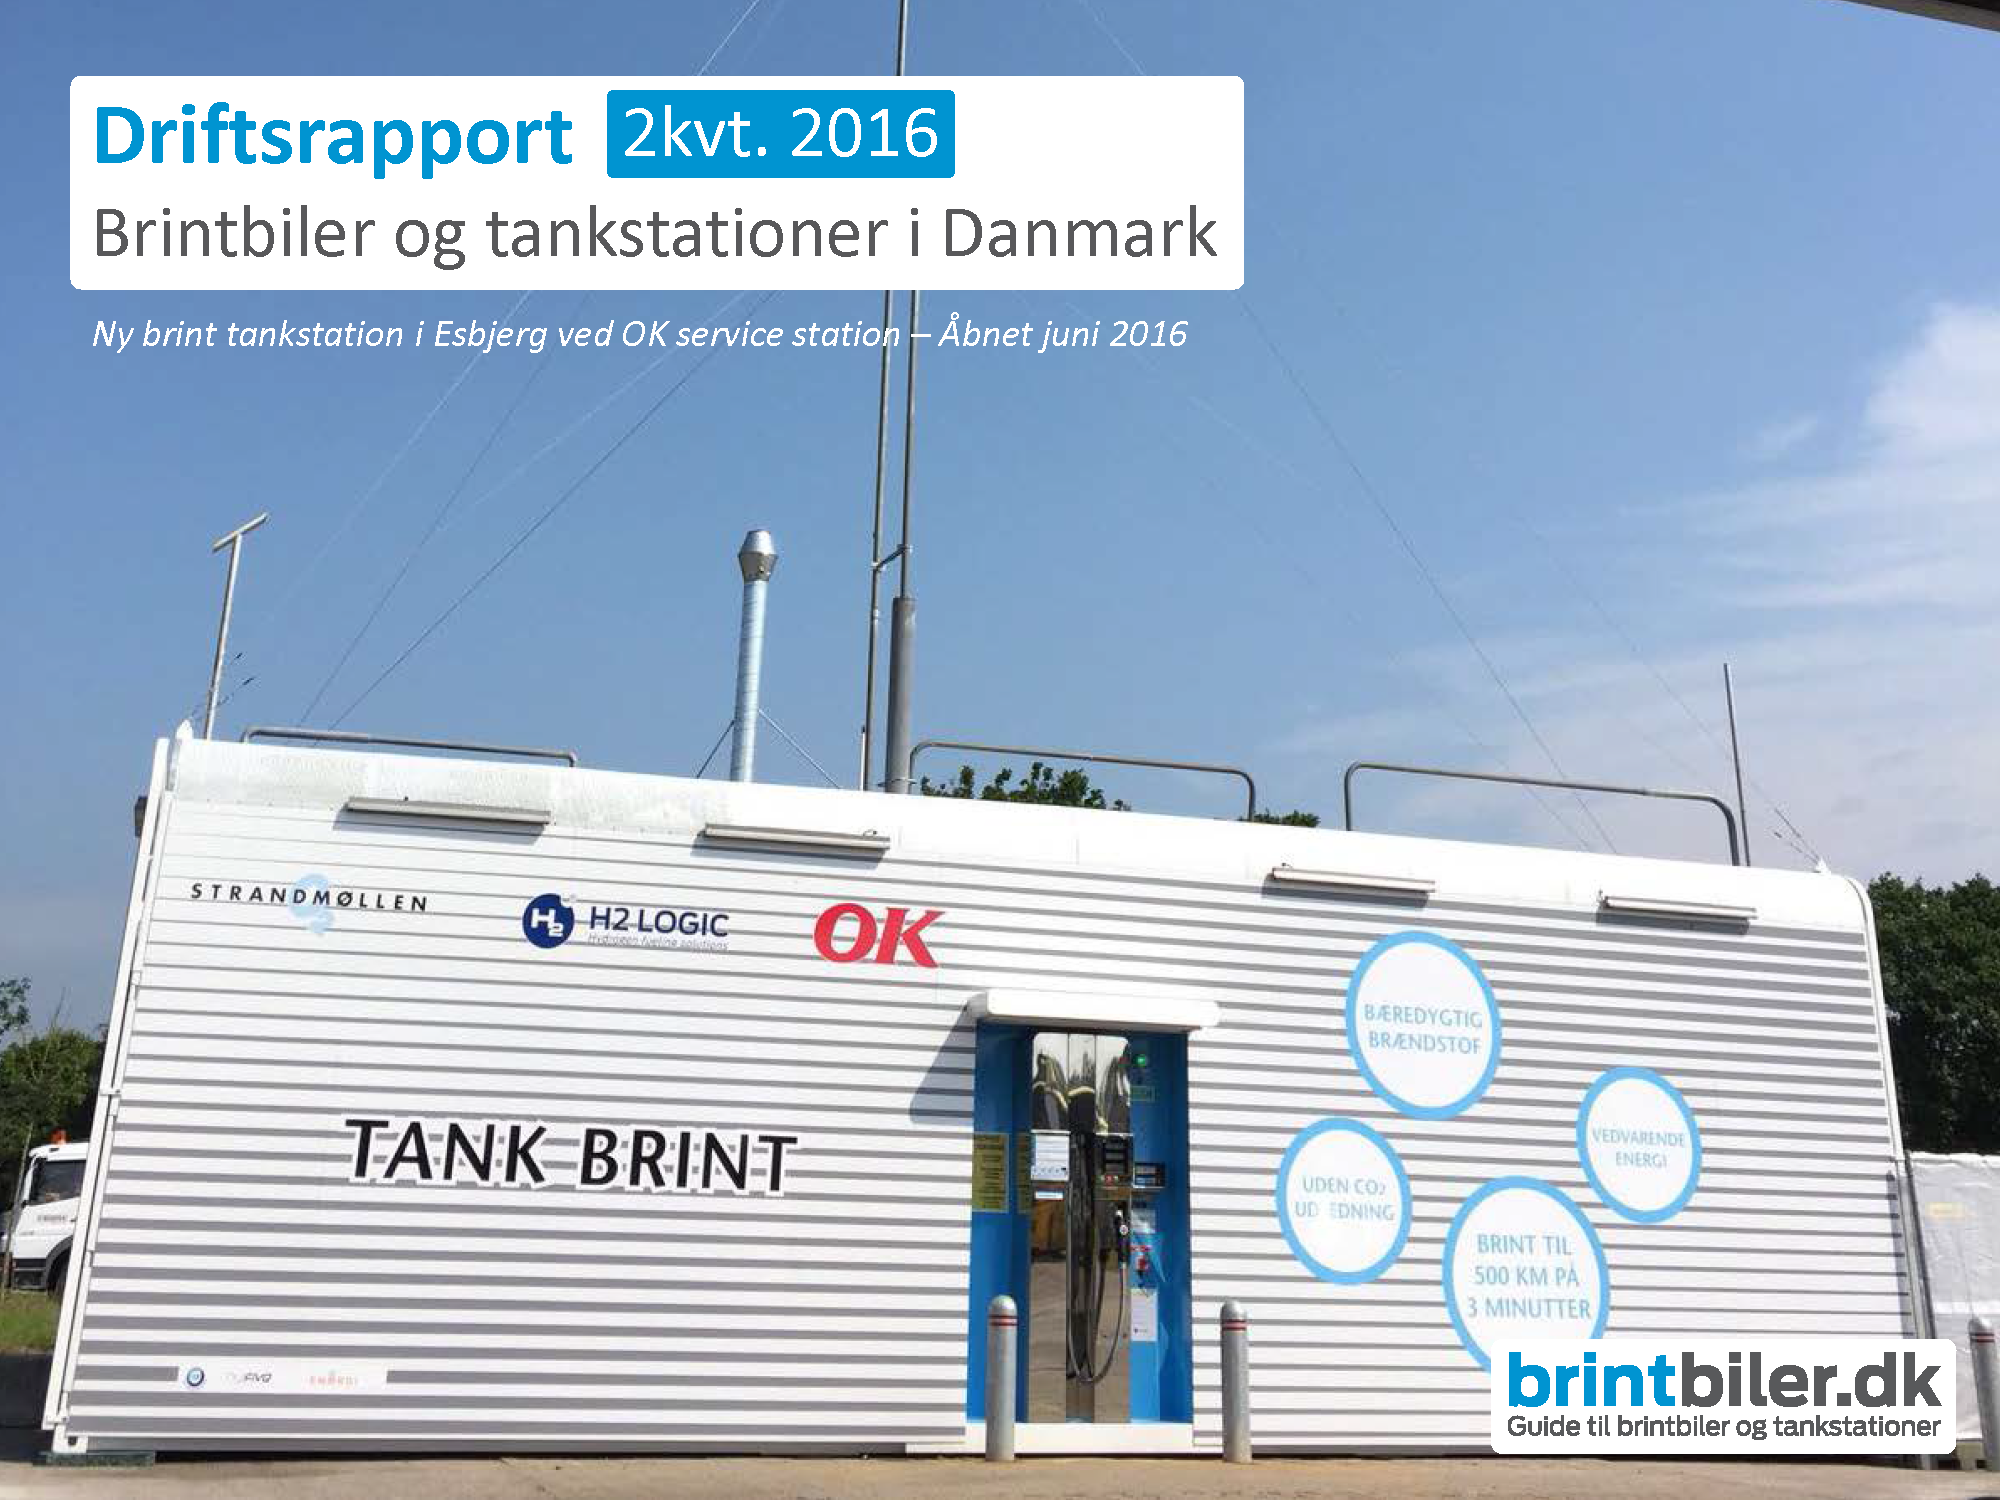 Driftsrapport-biler-tankstationer-2kvt-2016